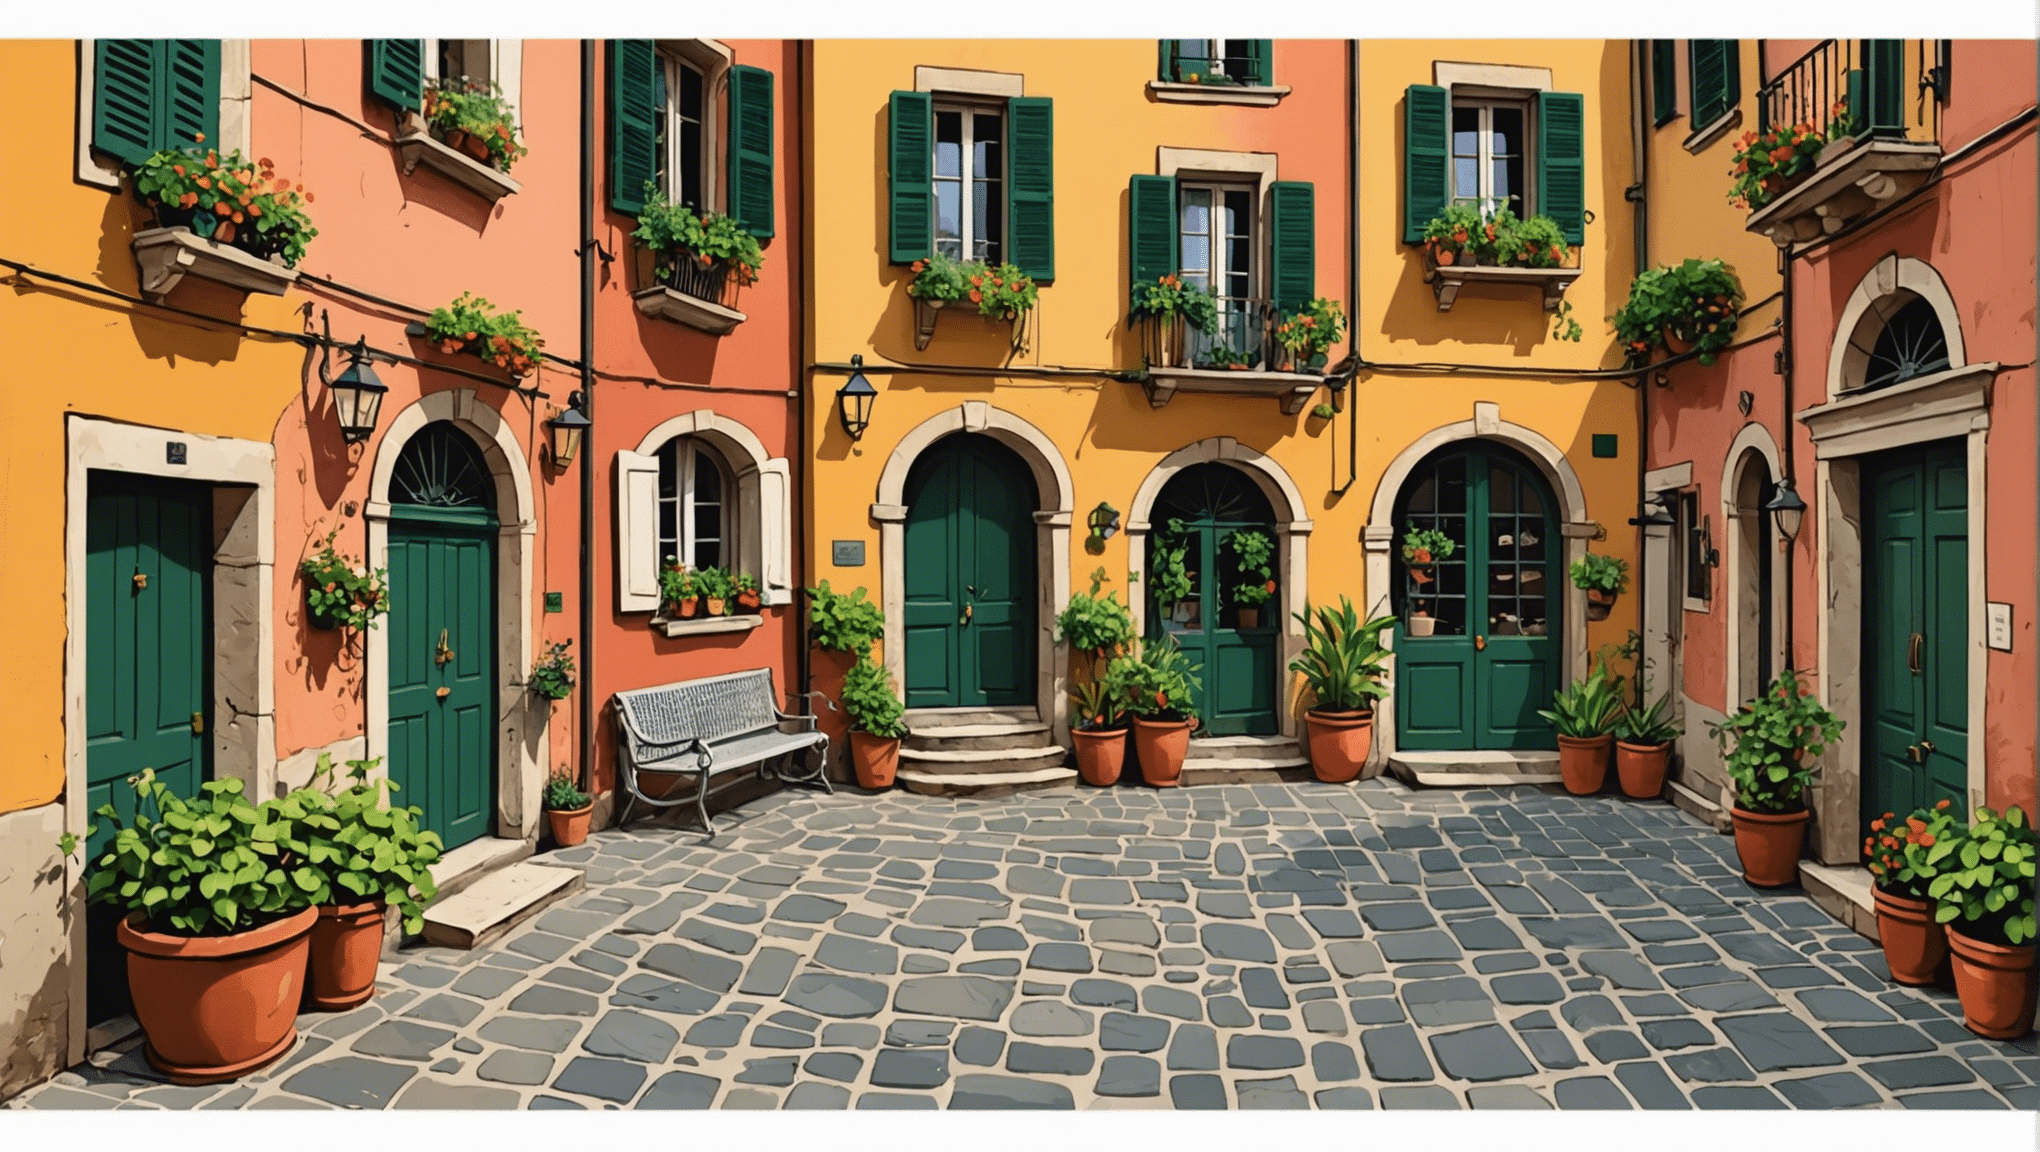 ヒントと伝統など、イタリアでのチップについて知っておくべきことをすべてご紹介します。イタリア滞在中にチップを渡すための完全ガイド。